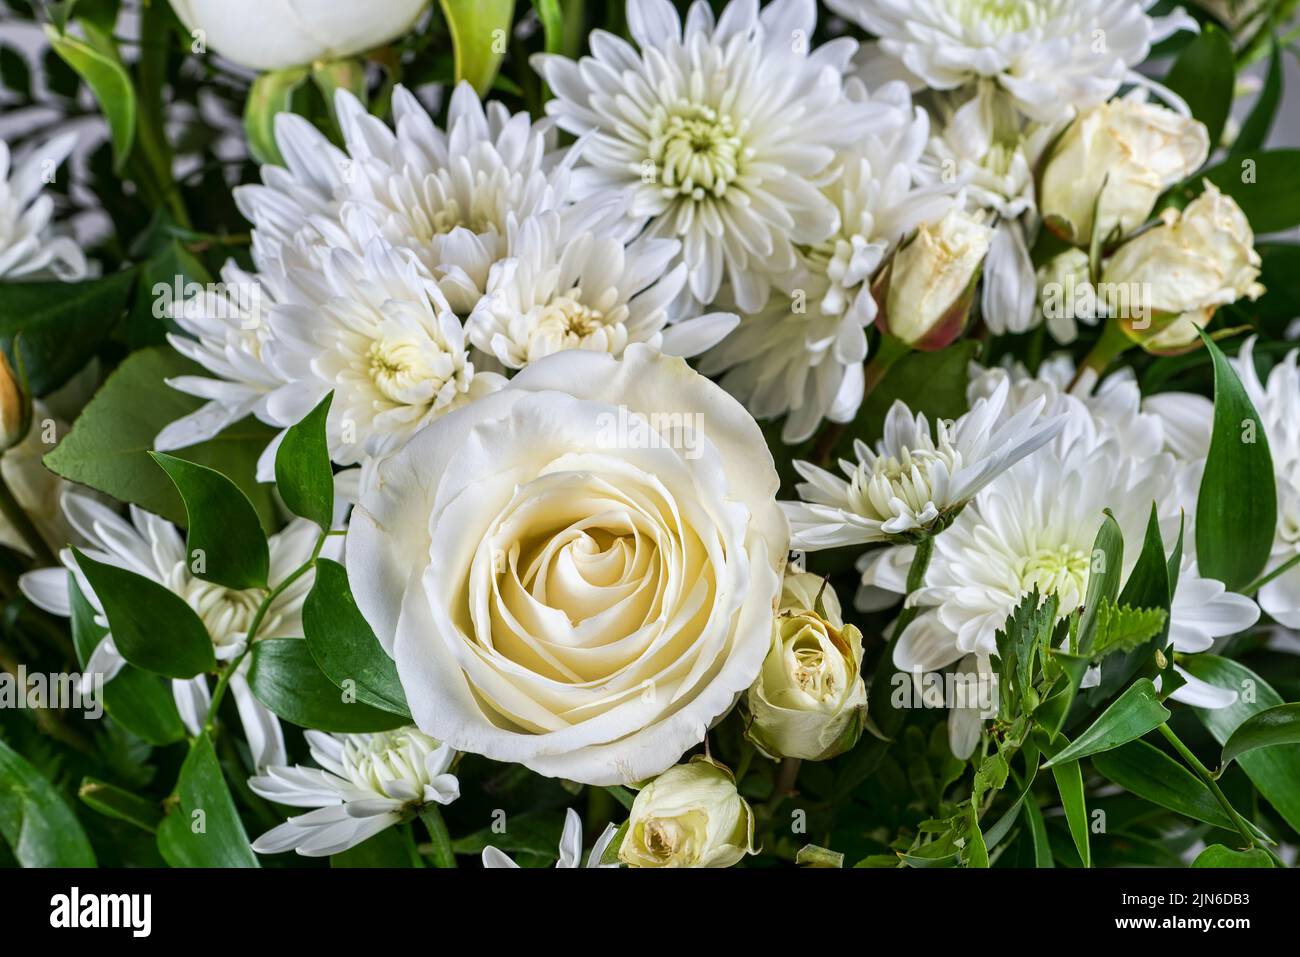 Flor blanca y hojas verde oscuro en arreglo floral brillante Foto de stock